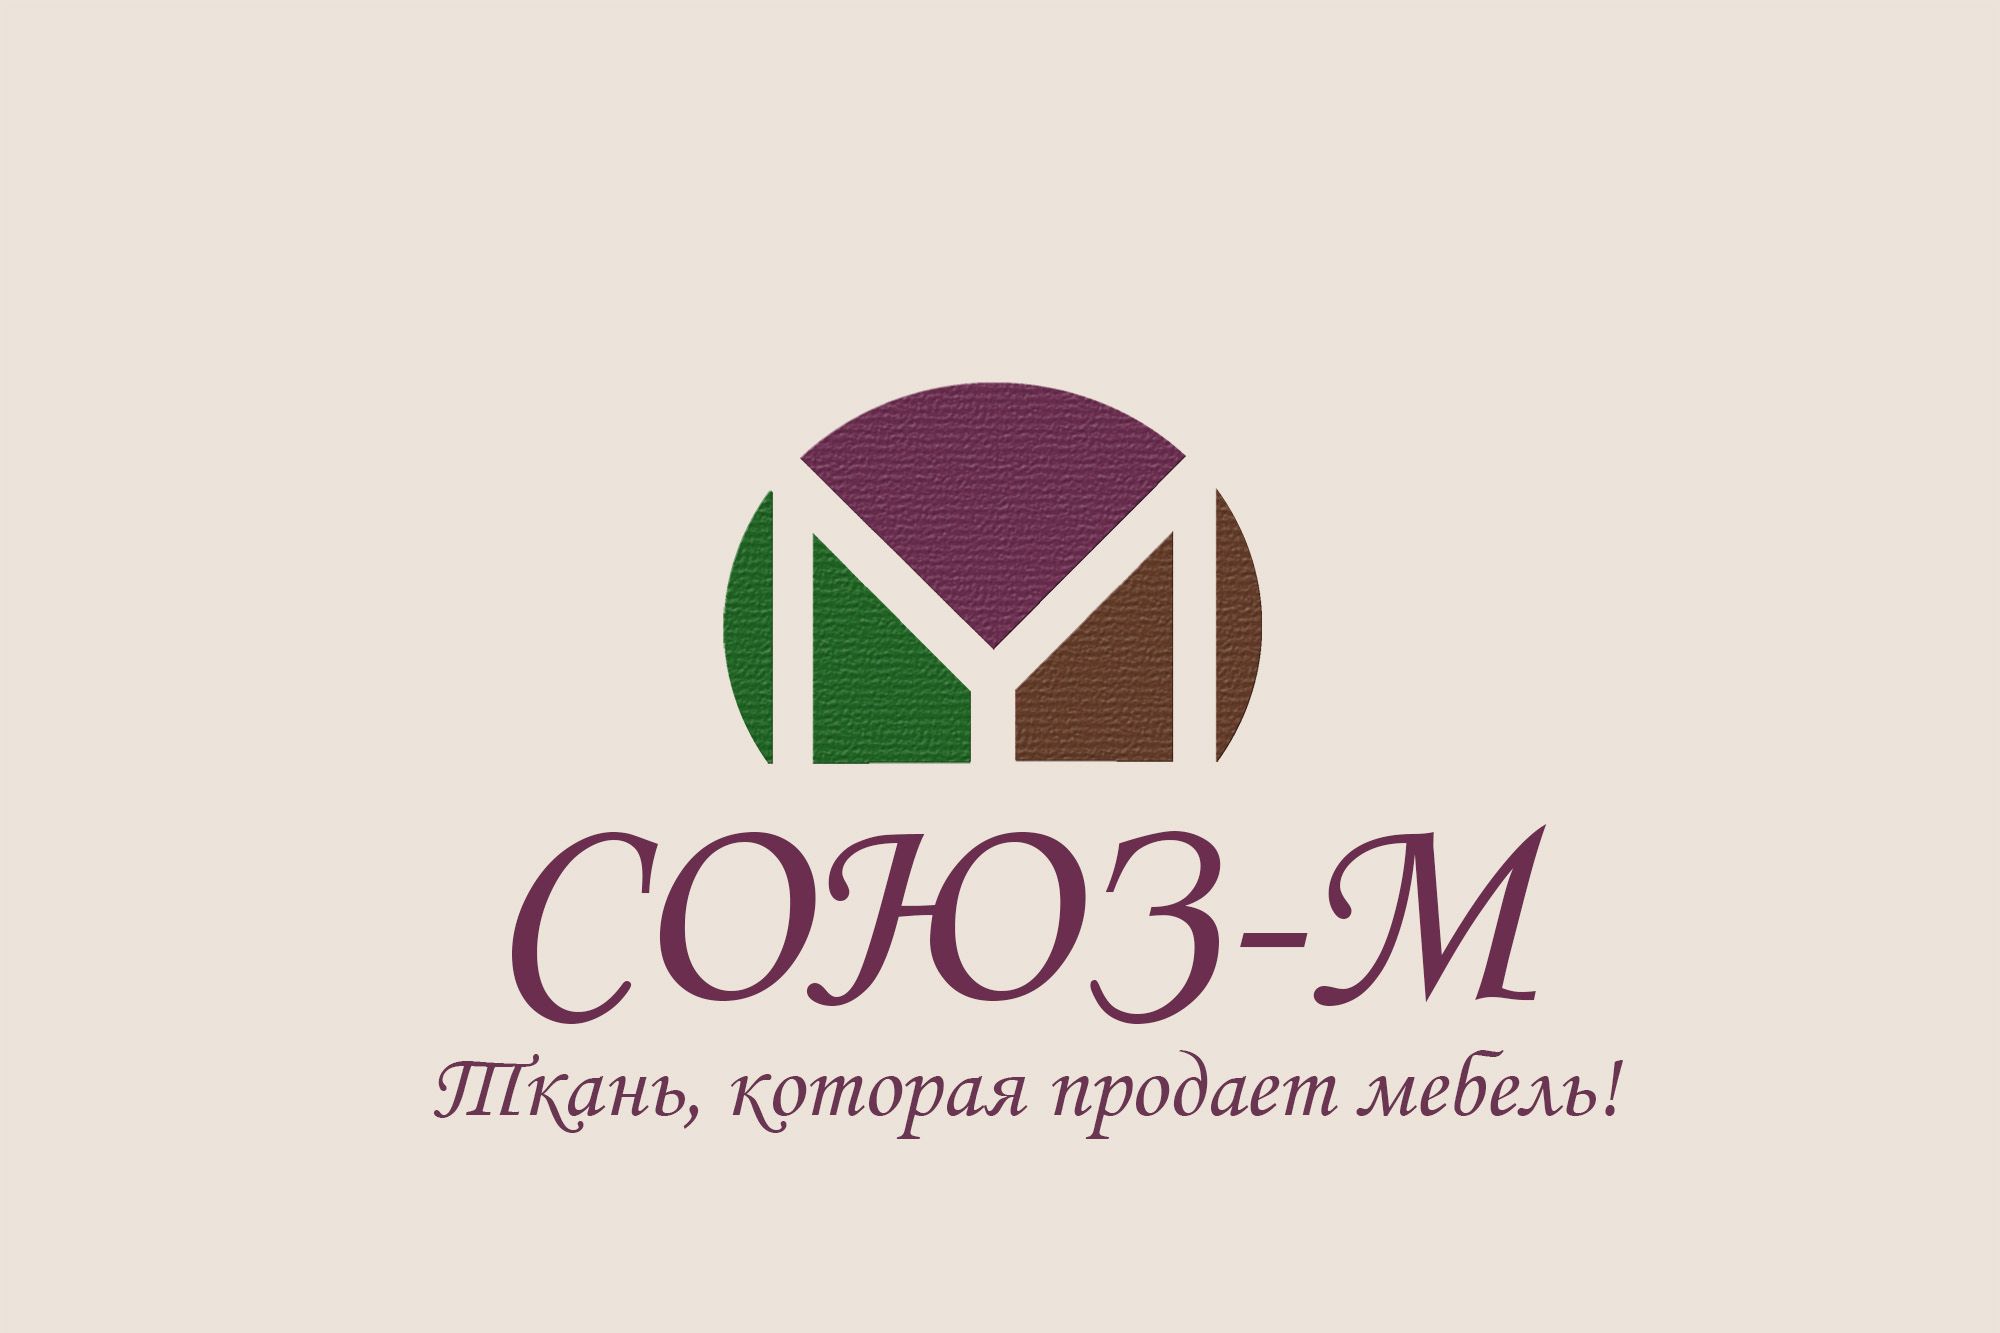 Логотип для компании мебельных тканей (ребрендинг) - дизайнер MShil